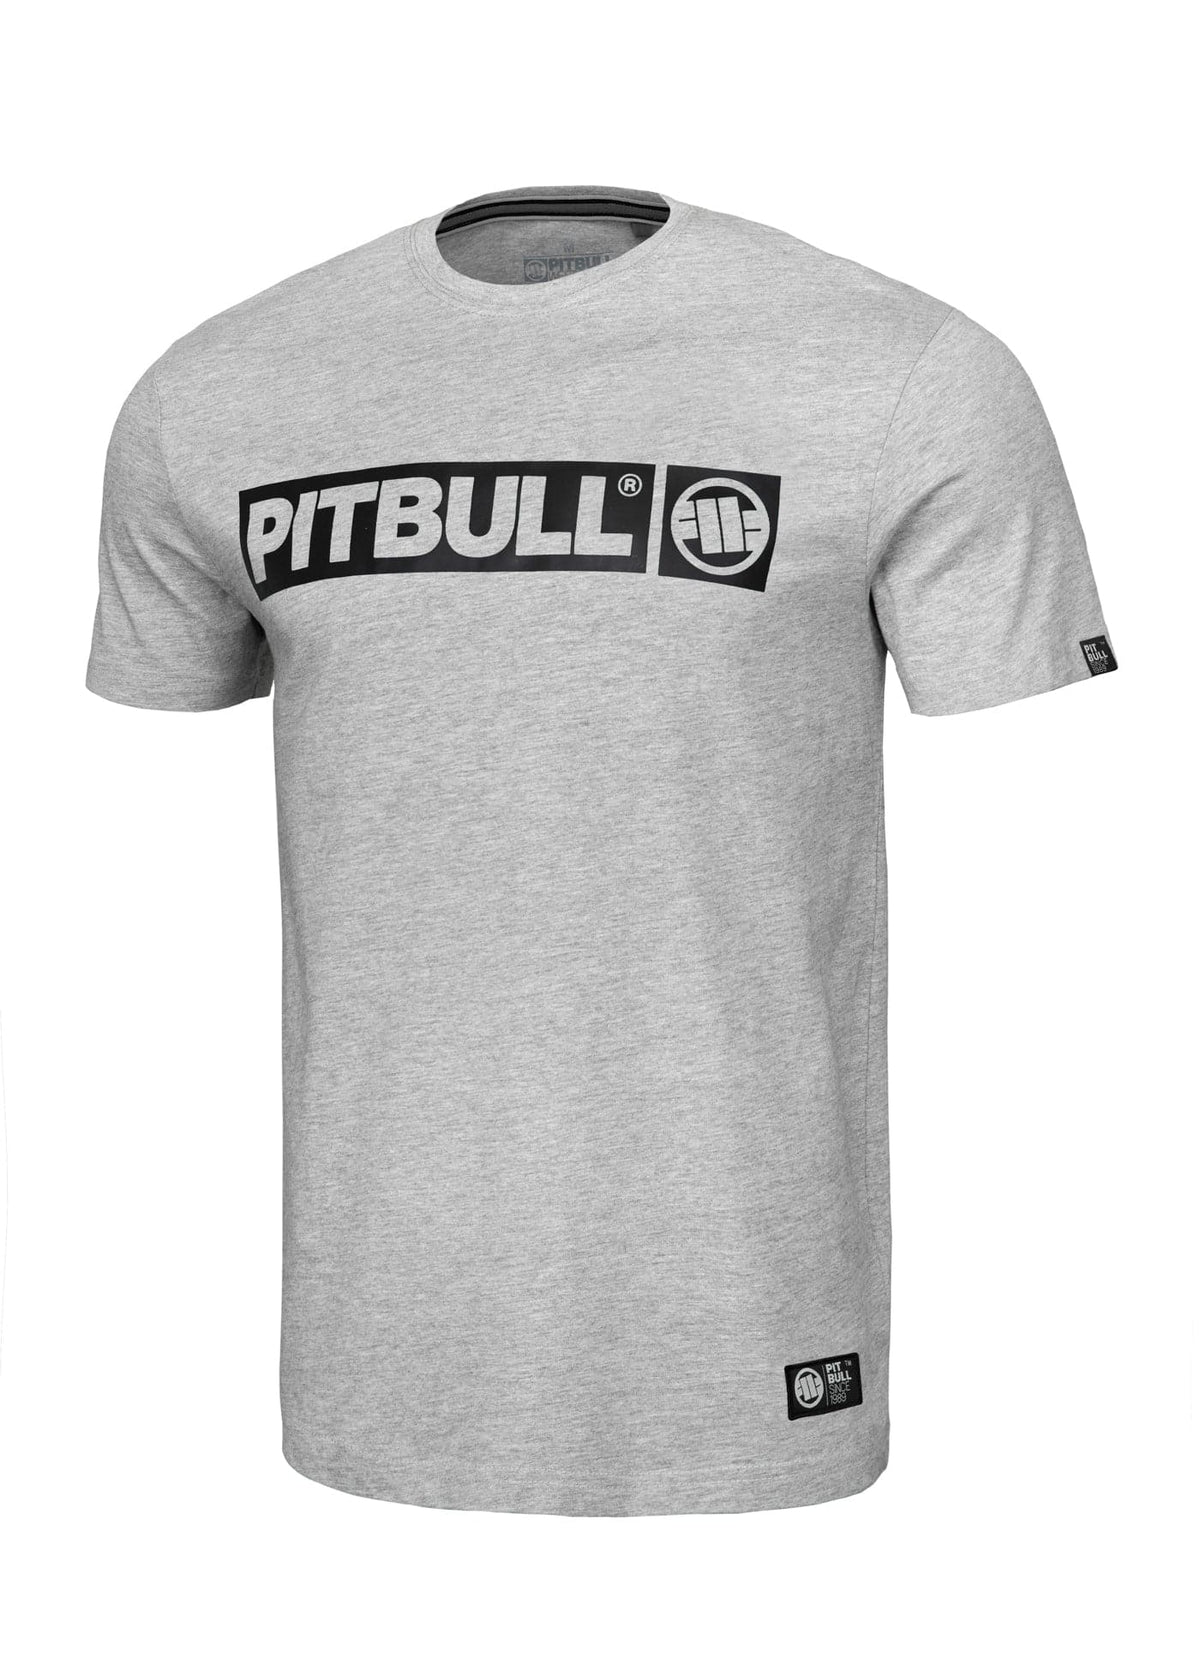 HILLTOP Lightweight Grey T-shirt - Pitbullstore.eu